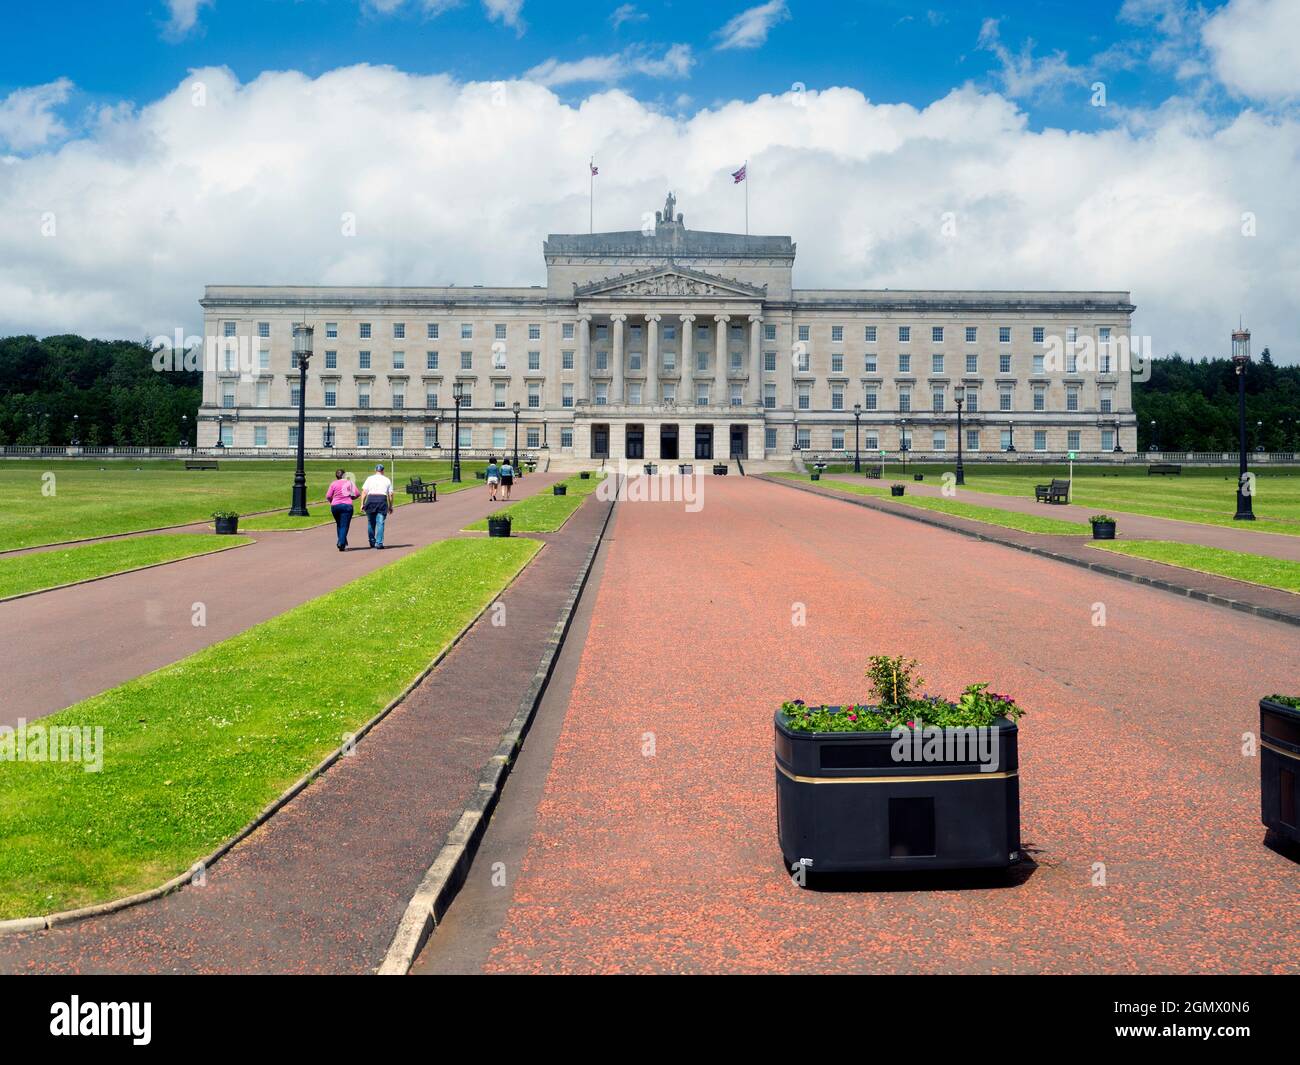 Le Parlement d'Irlande du Nord est communément appelé Stormont, en raison de son emplacement dans le domaine de Stormont Estate de Belfast. Précédemment hou Banque D'Images